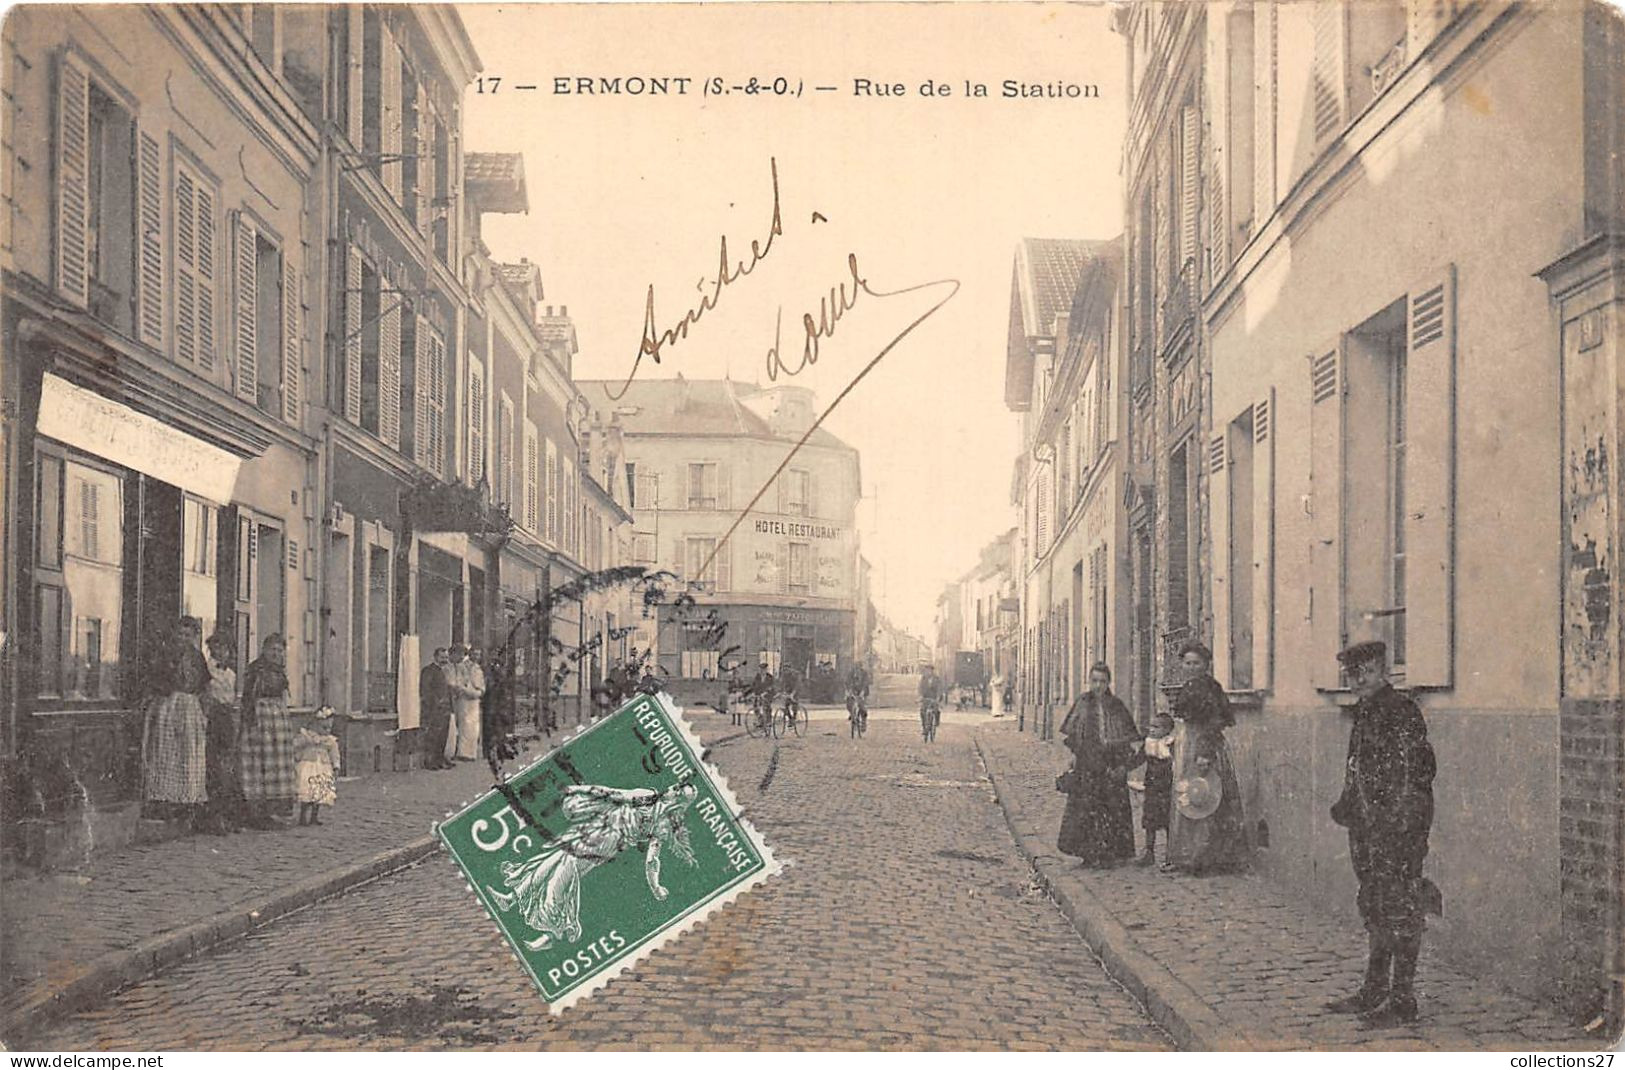 95-ERMONT- RUE DE LA STATION - Ermont-Eaubonne